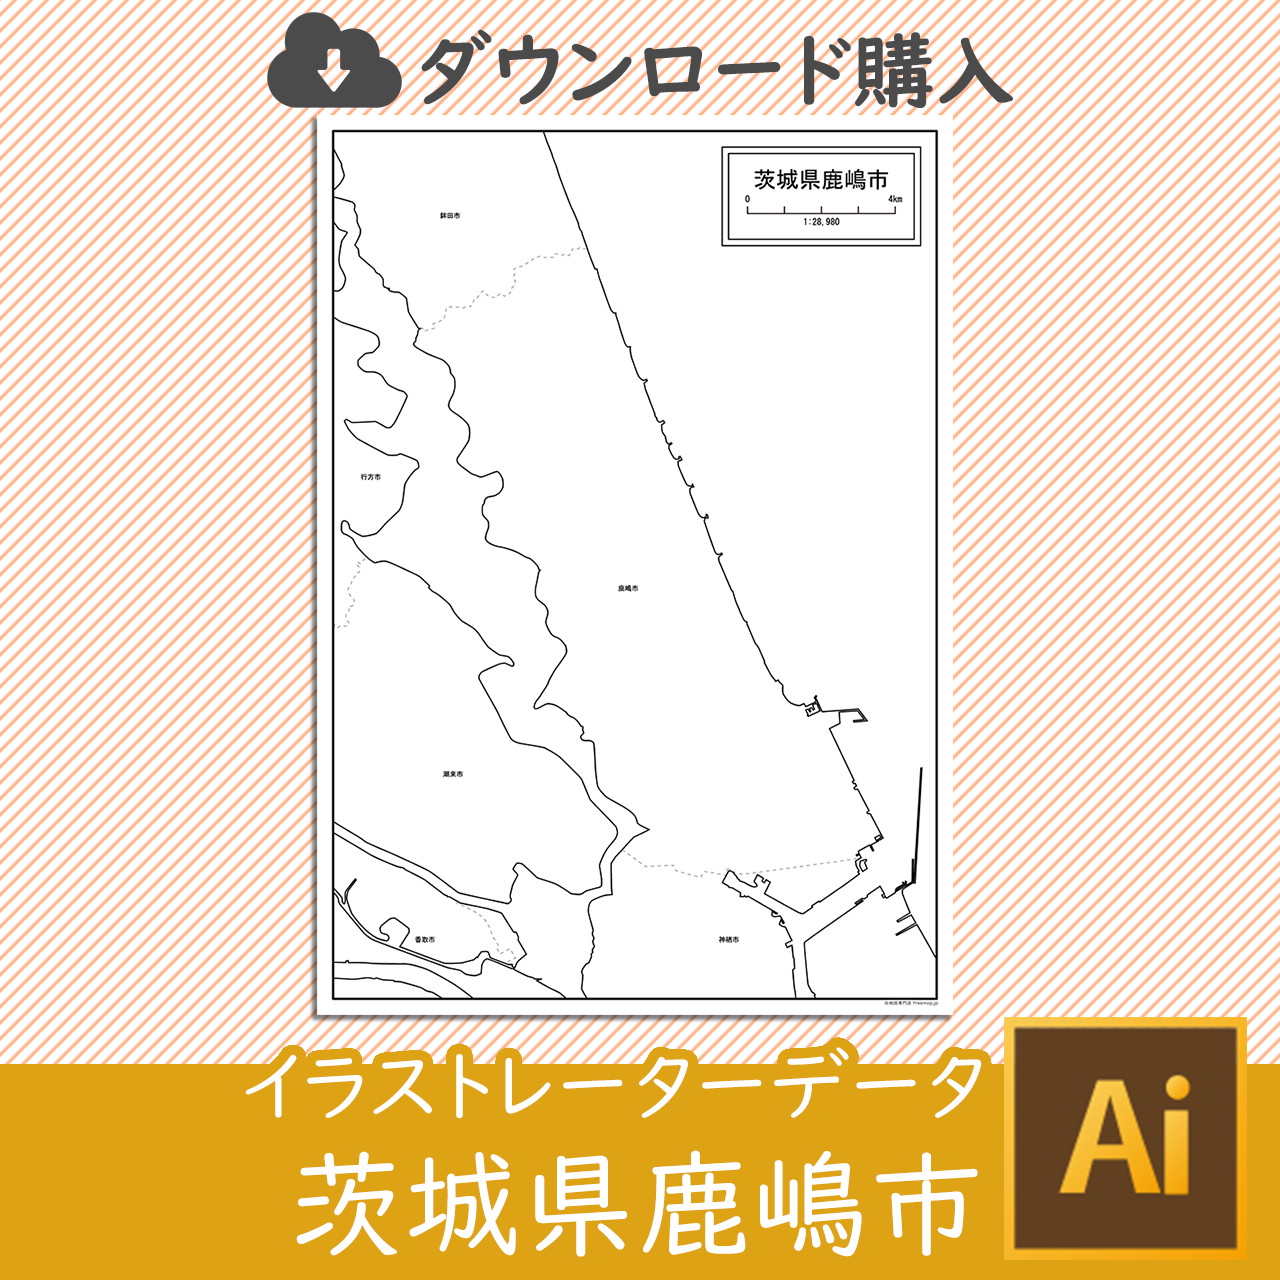 鹿嶋市のaiデータのサムネイル画像